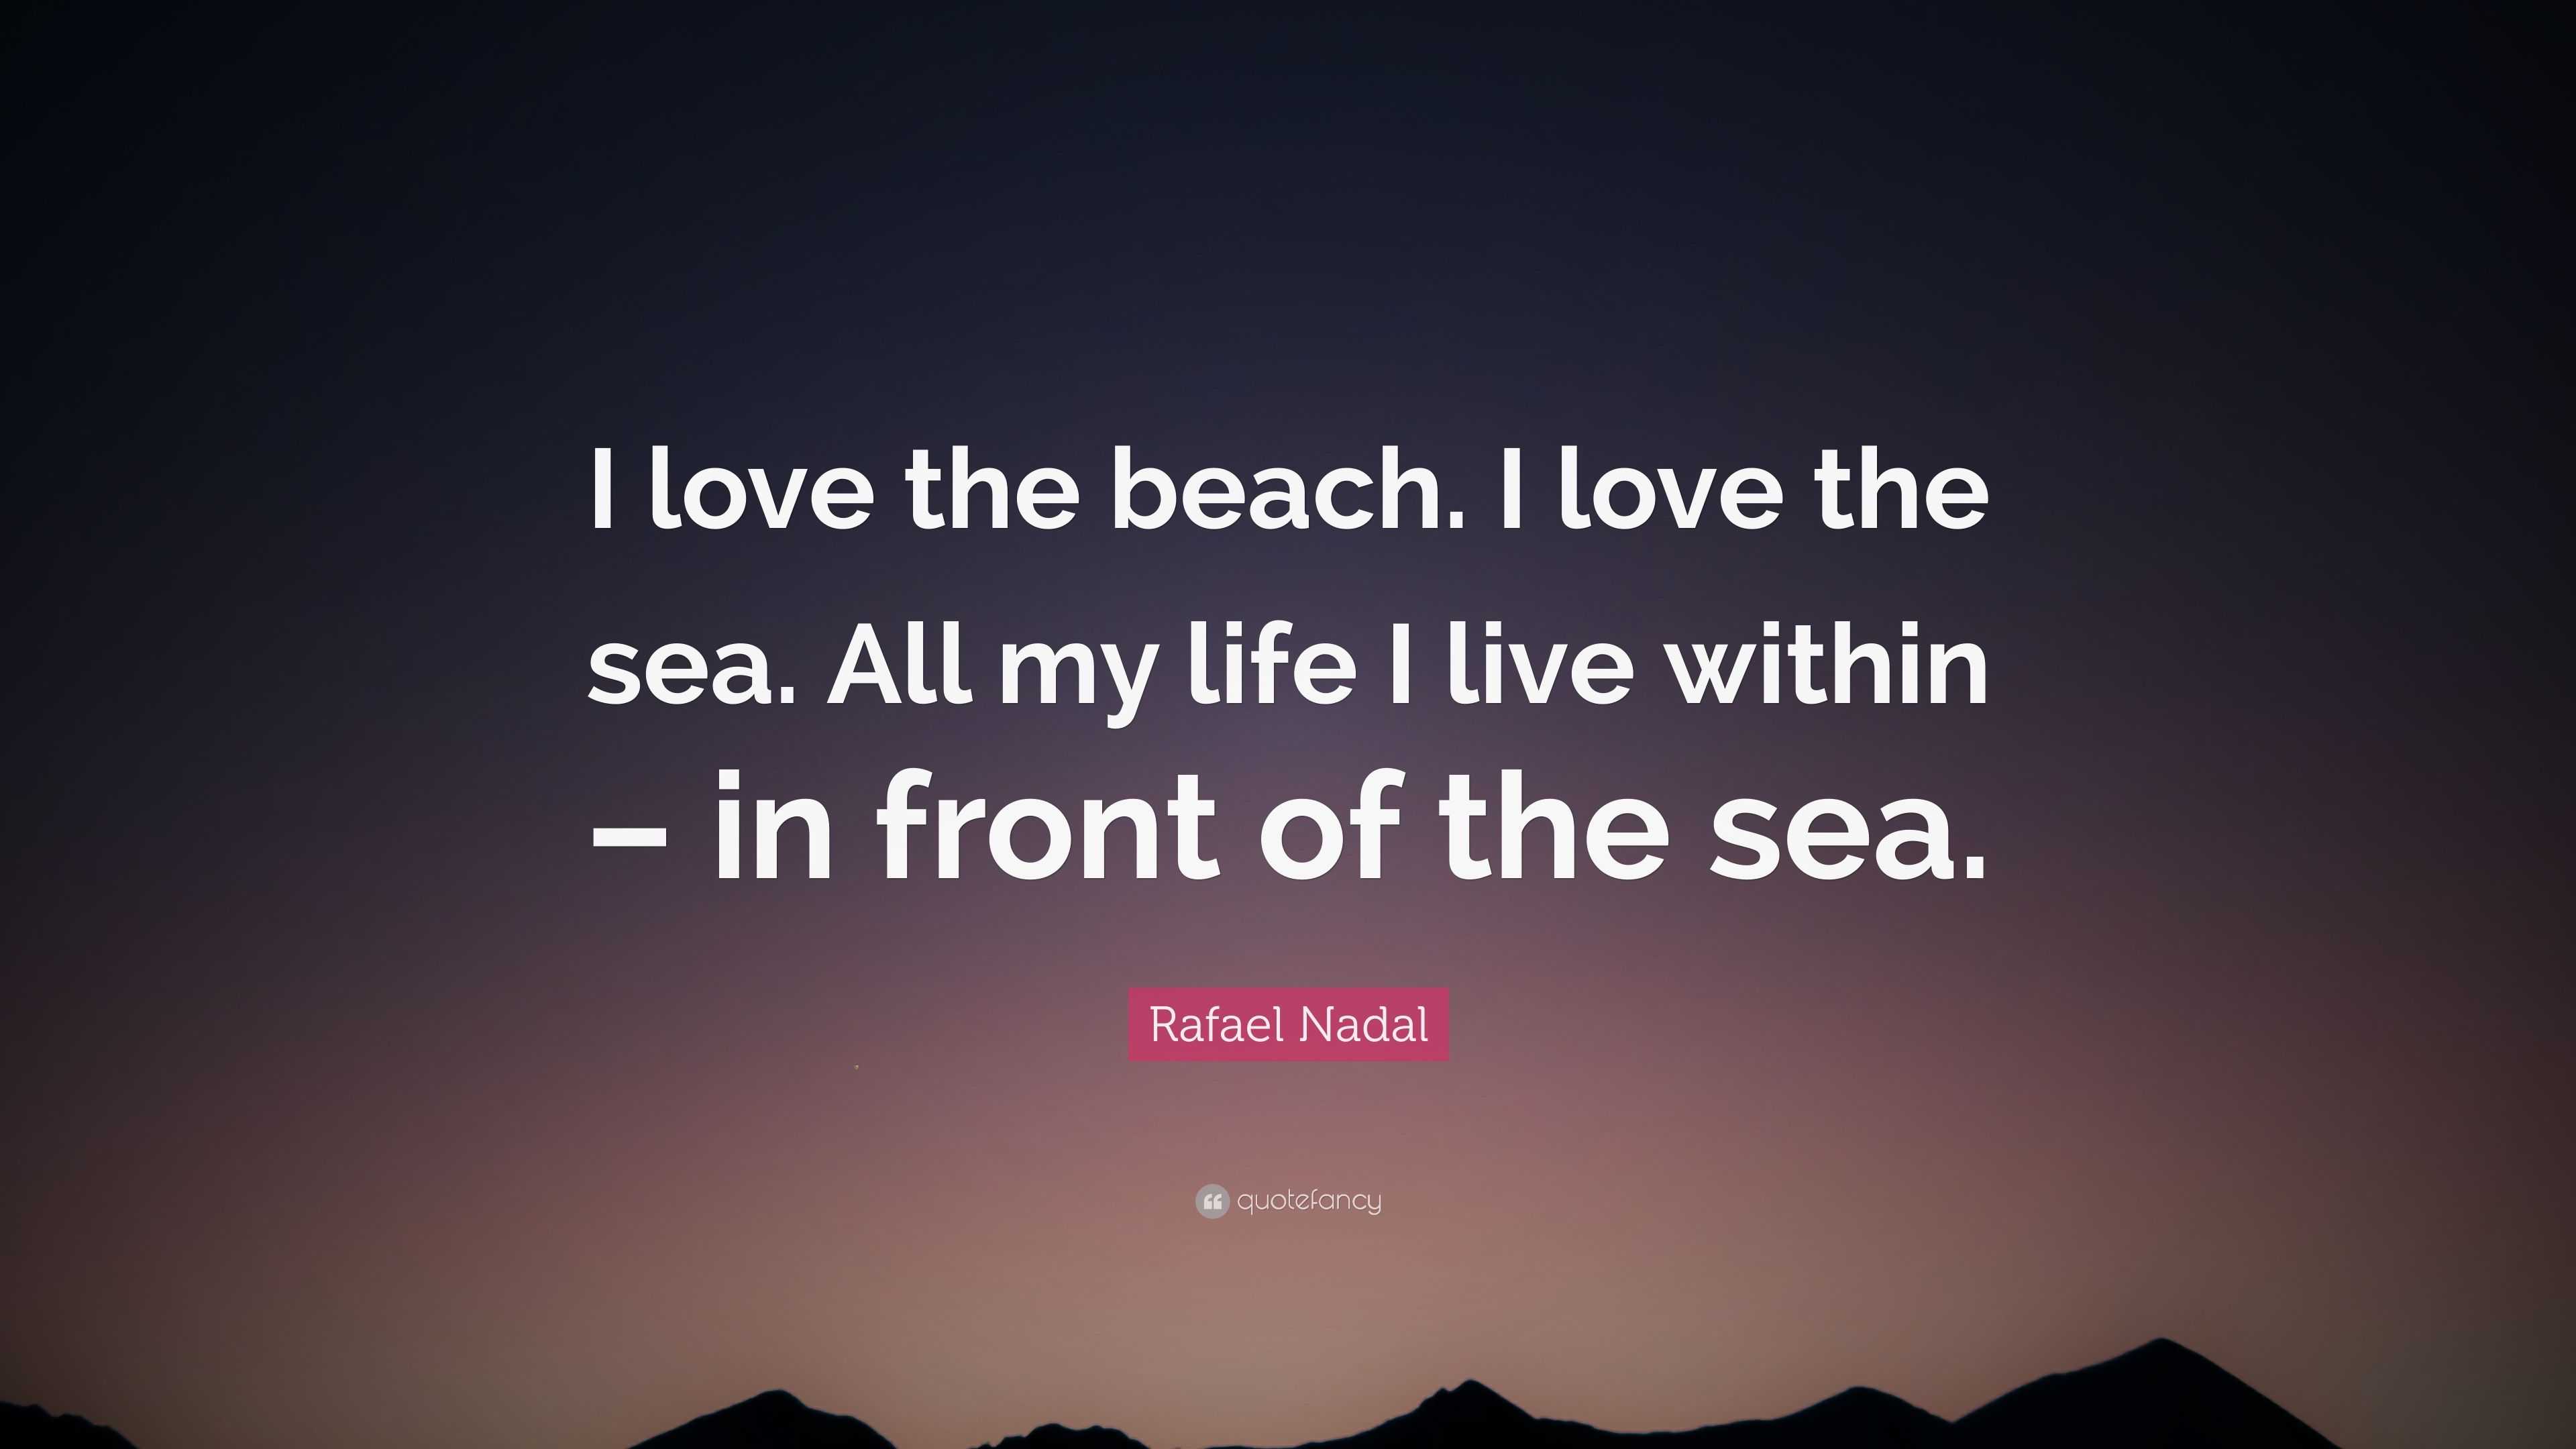 Rafael Nadal Quote “I love the beach I love the sea All